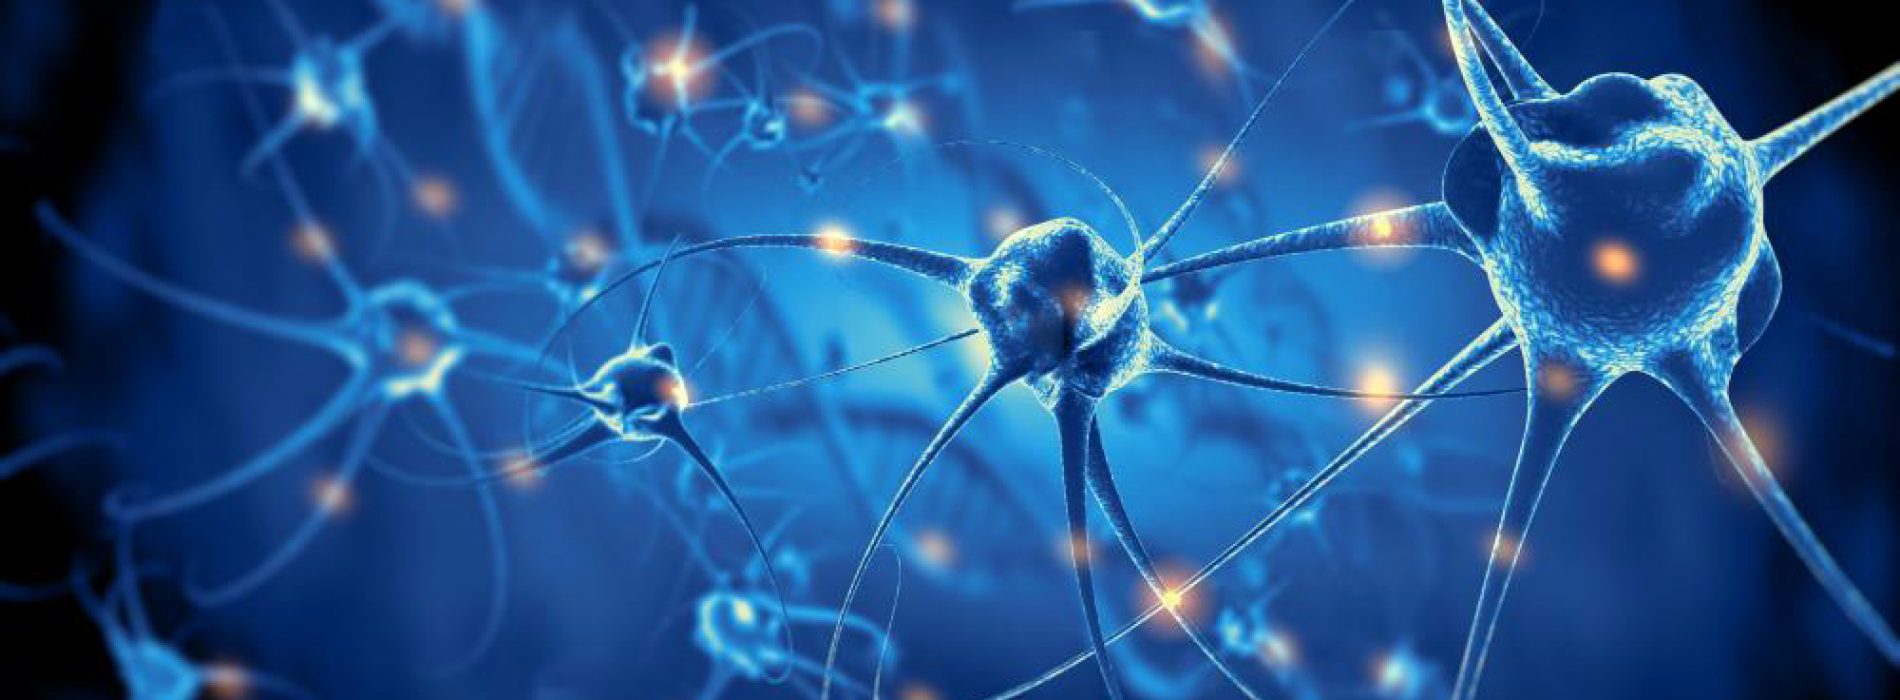 Toonaangevend onderzoek laat zien: Aspartaam (E951) verstoort de werking van de hersenen